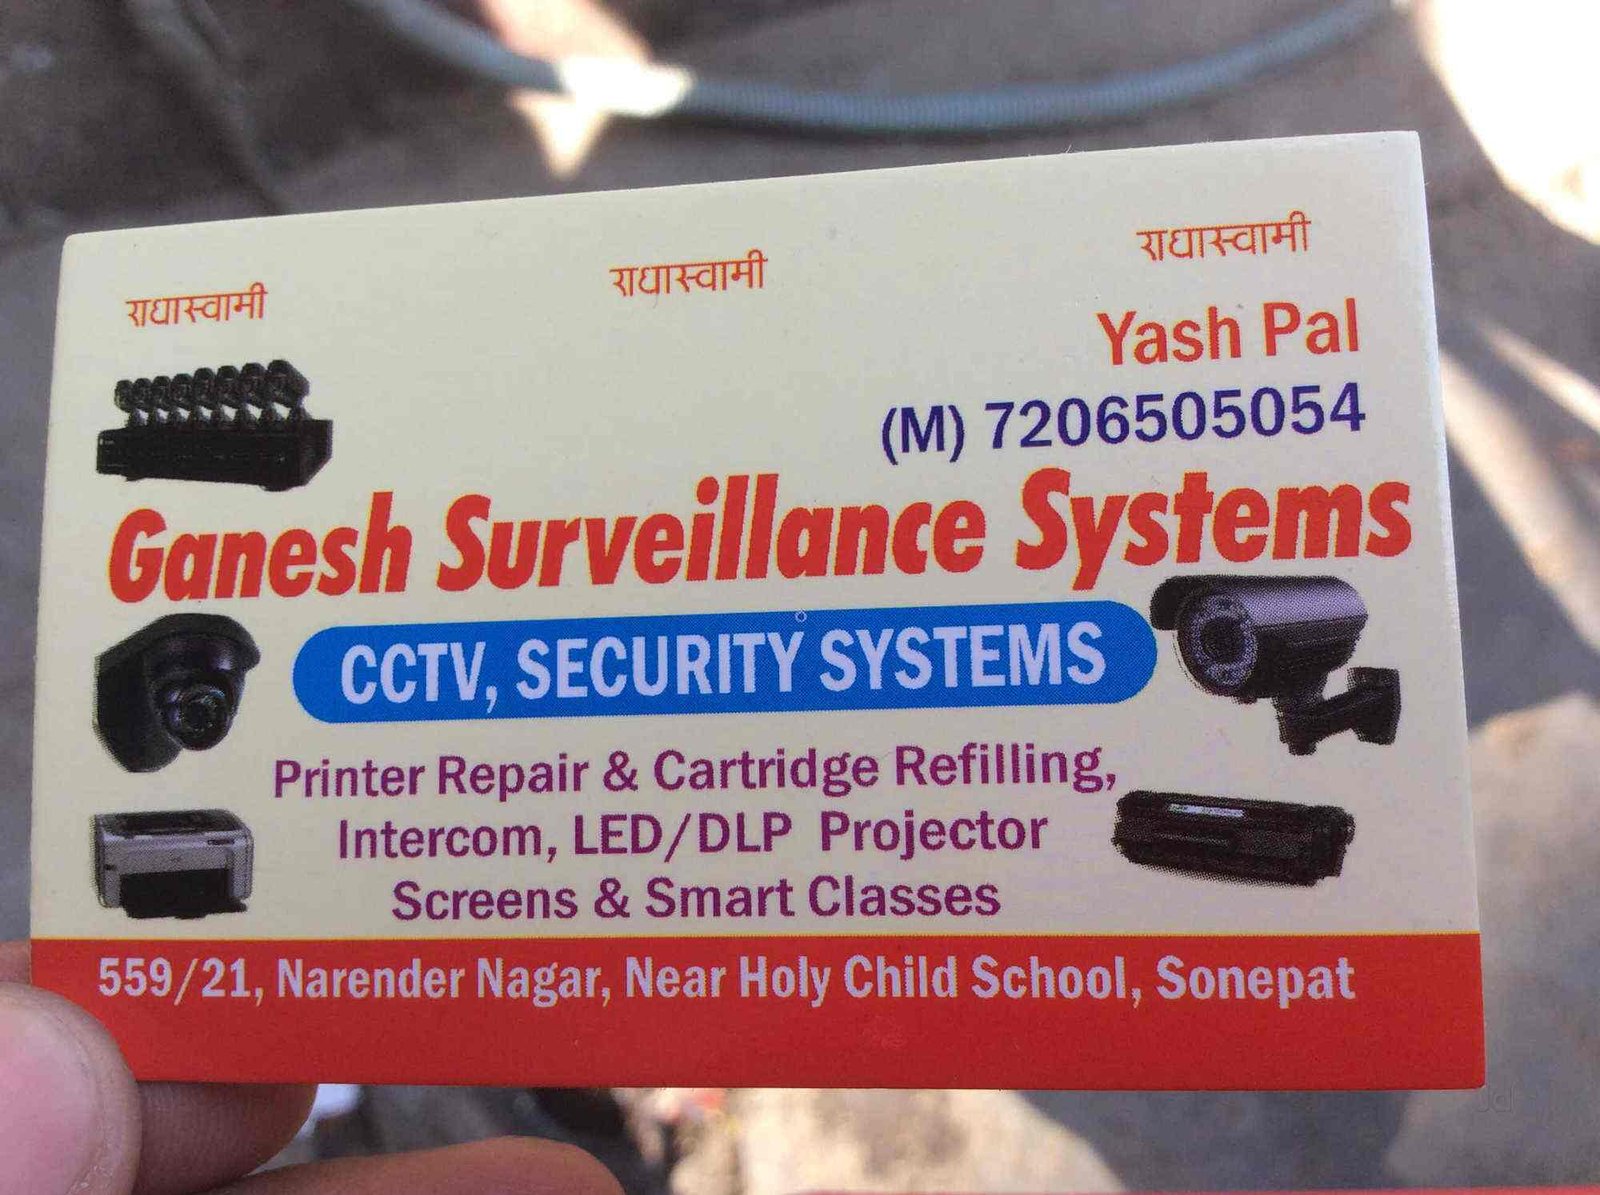 Ganesh Sureillance Systems